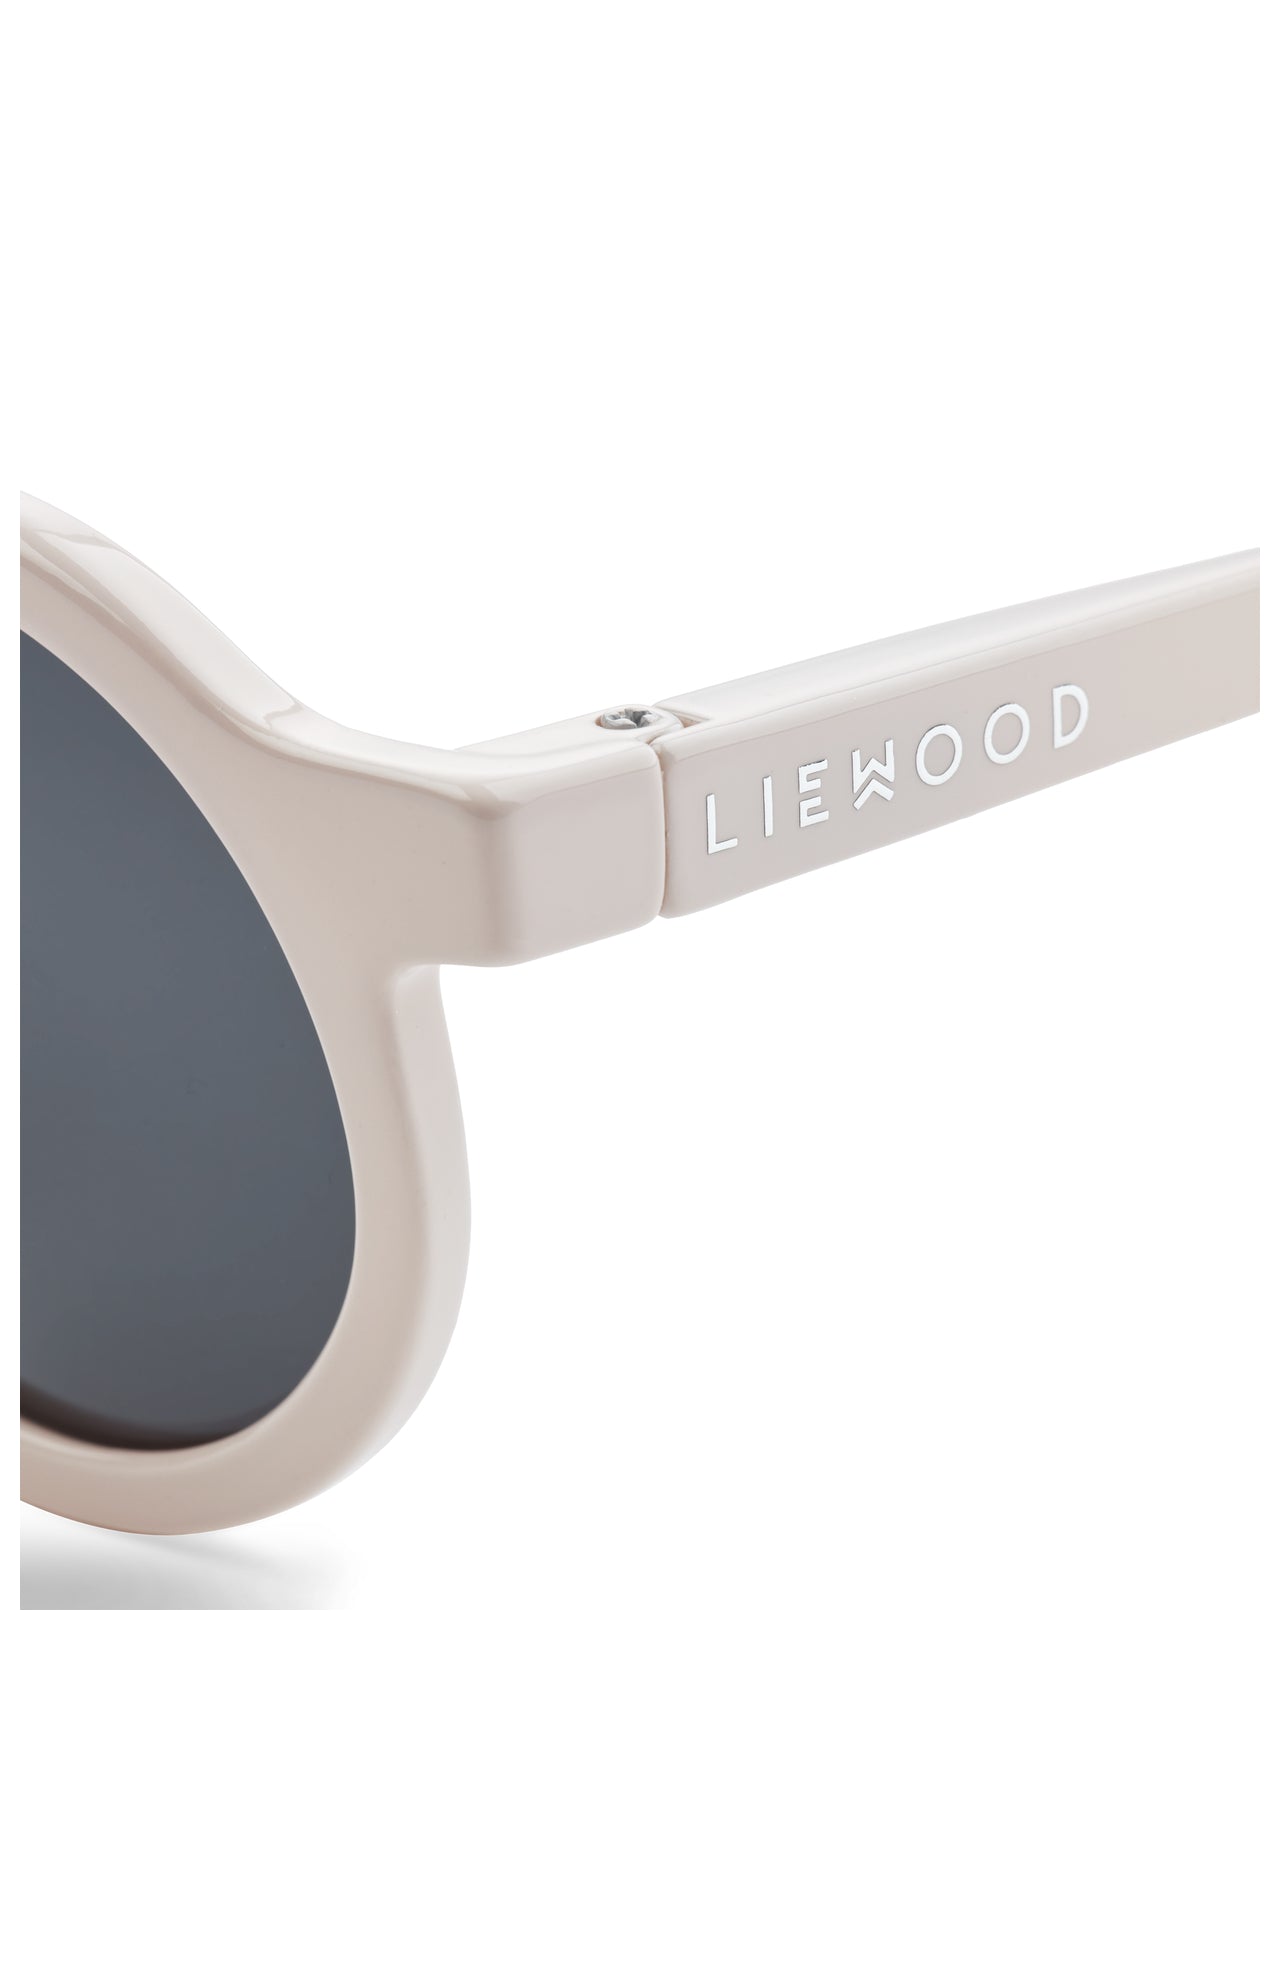 Liewood Sonnenbrille, Kinder 4 bis 10 Jahre, verschiedene Farben, UV-Schutz, stylisches Design, für sonnige Tage